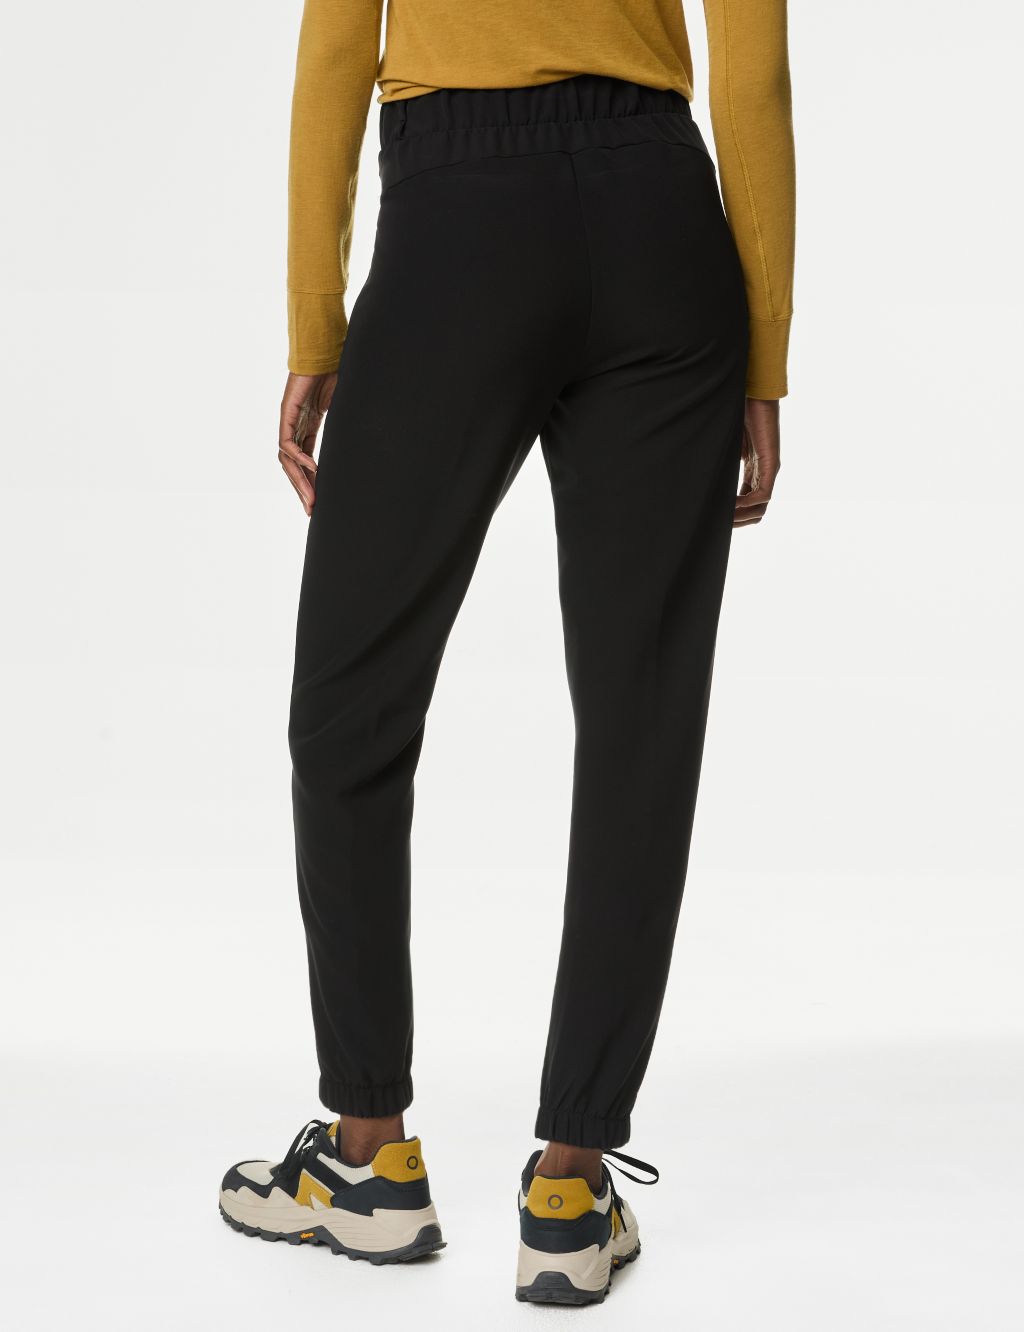 Stormwear™ Slim Fit 7/8 Walking Trousers | Goodmove | M&S